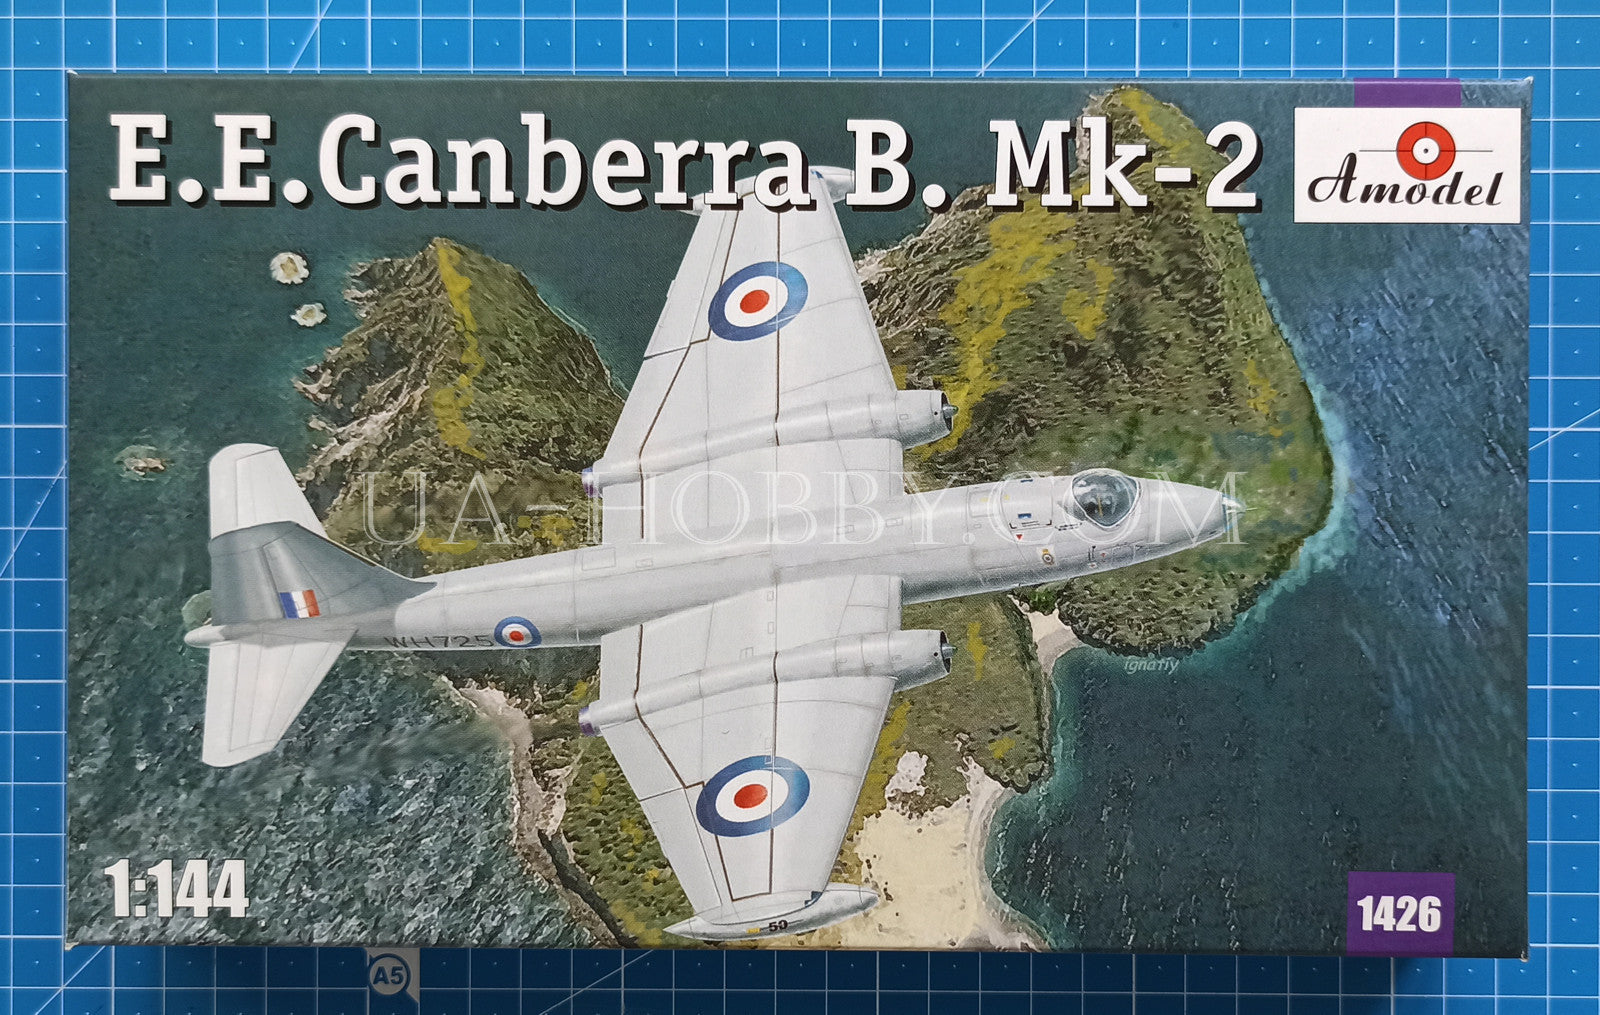 1/144 E.E. Canberra B. Mk-2. Amodel 1426